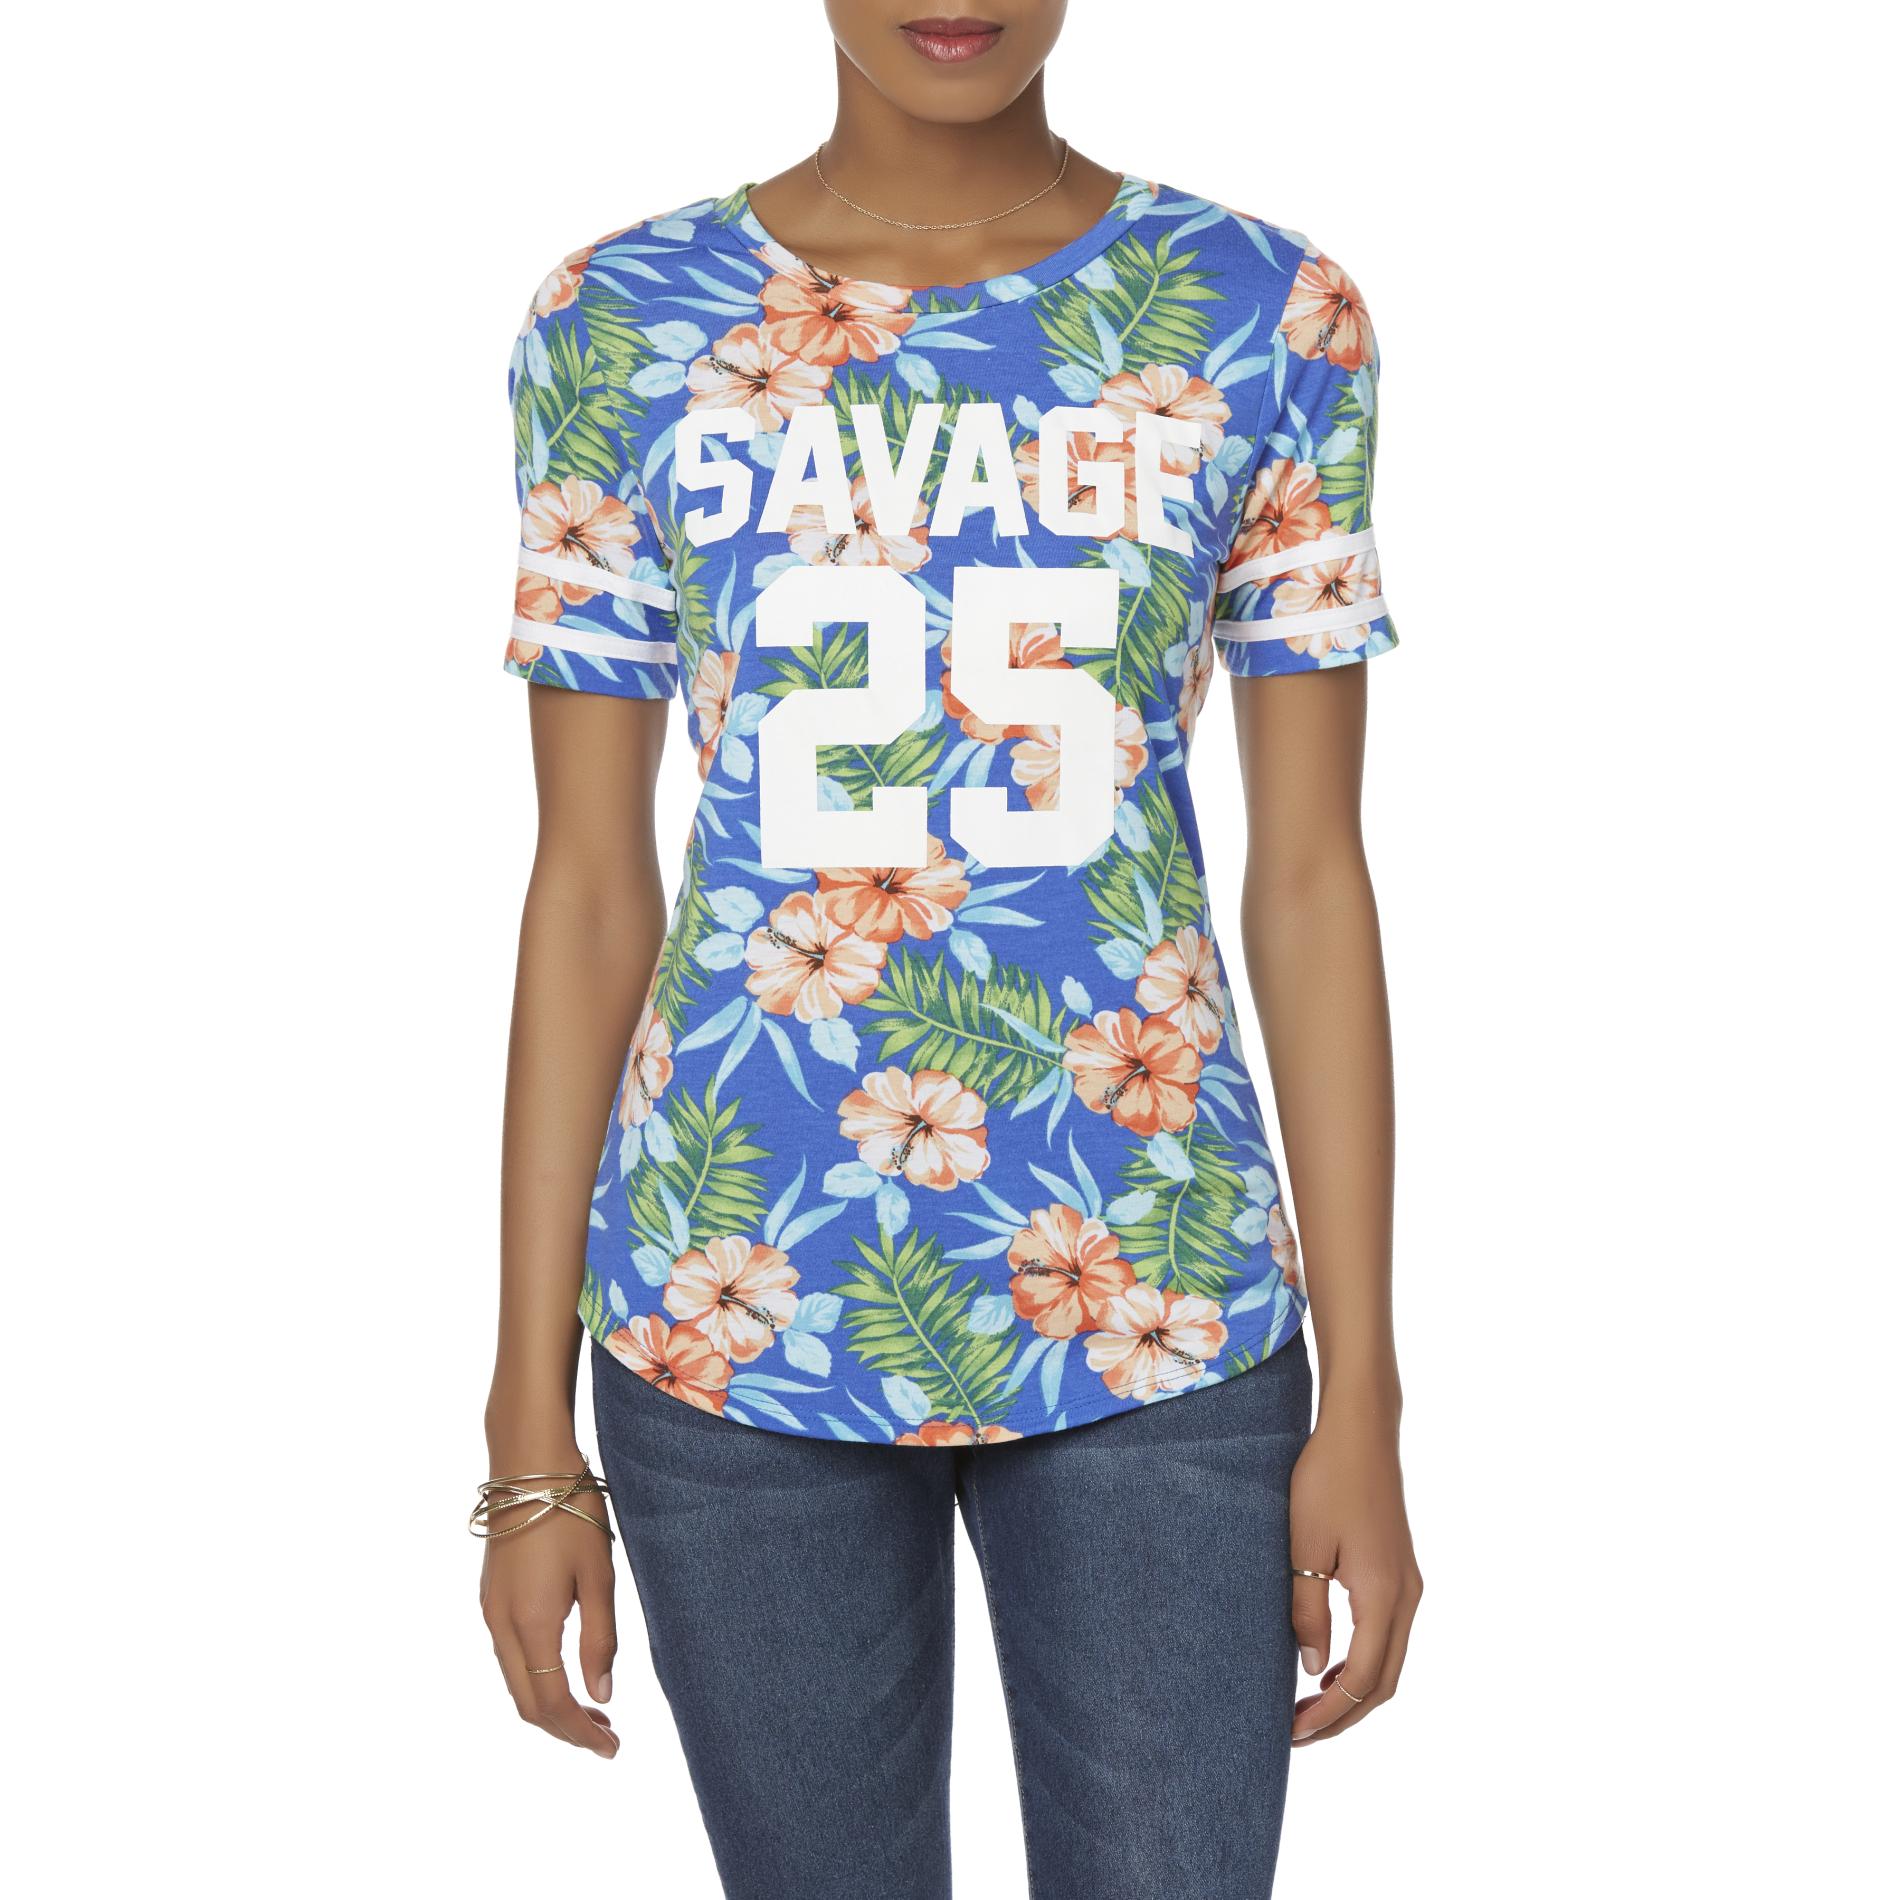 Joe Boxer Juniors' Graphic T-Shirt - Savage